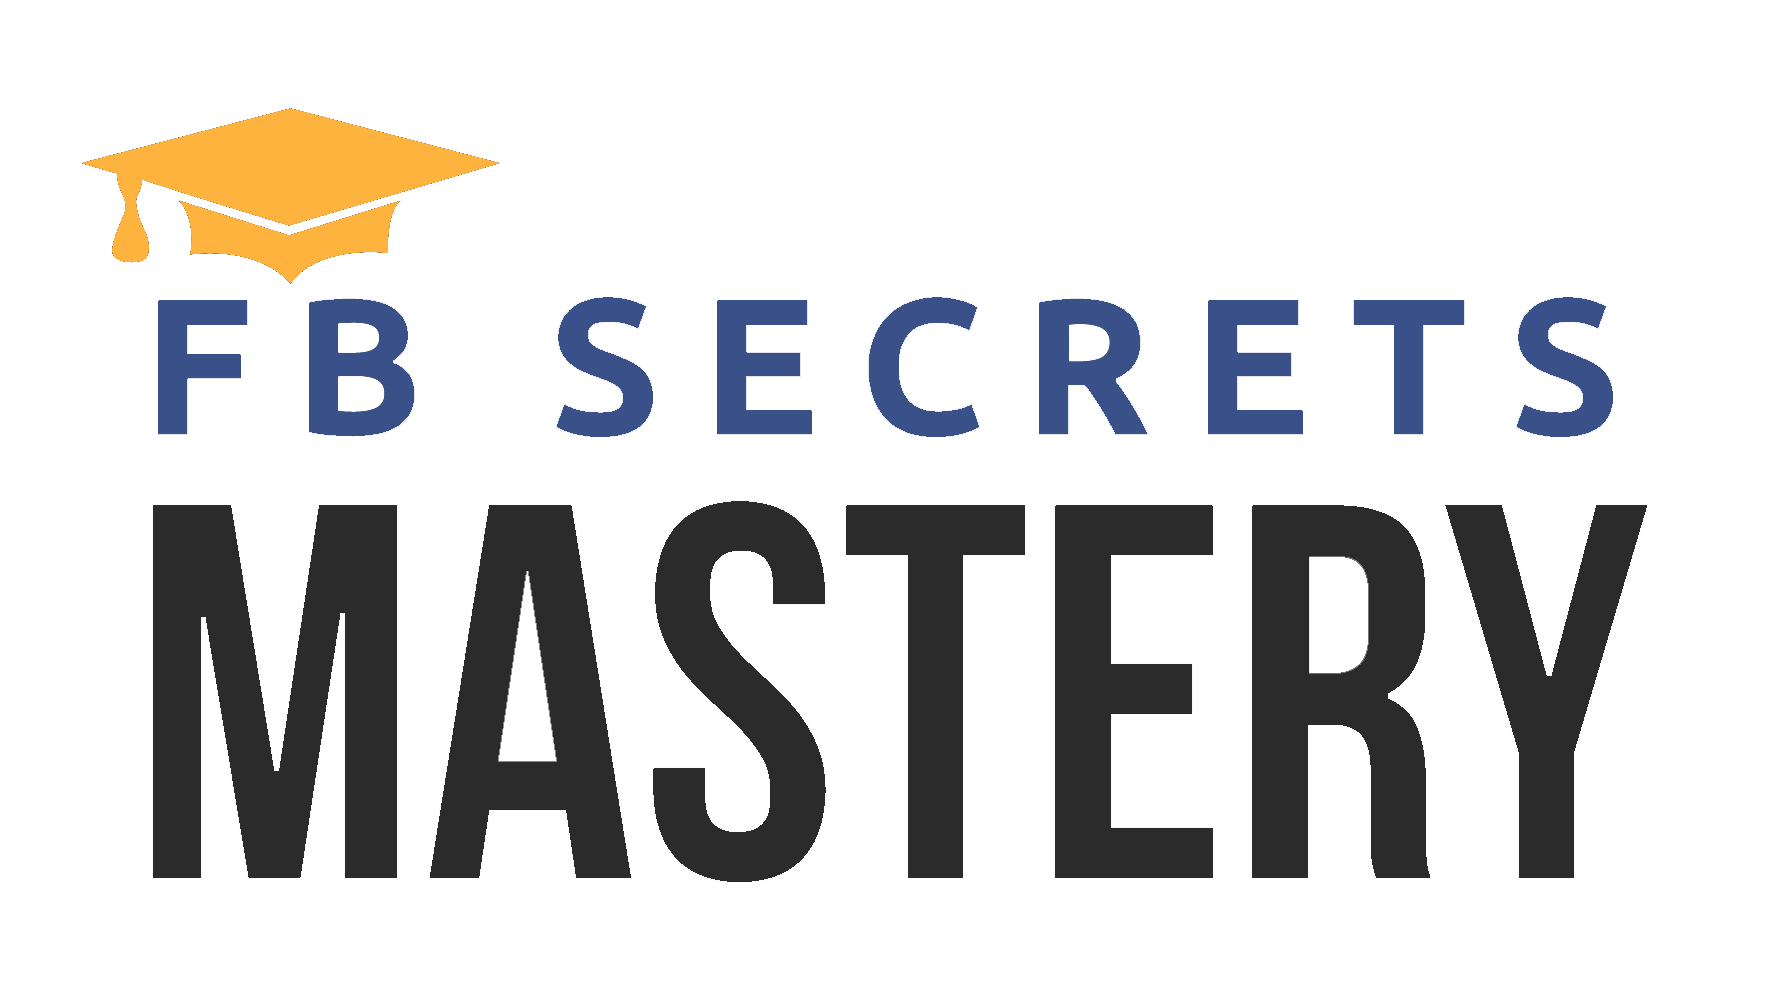 Peng Joon - FB Secrets Mastery